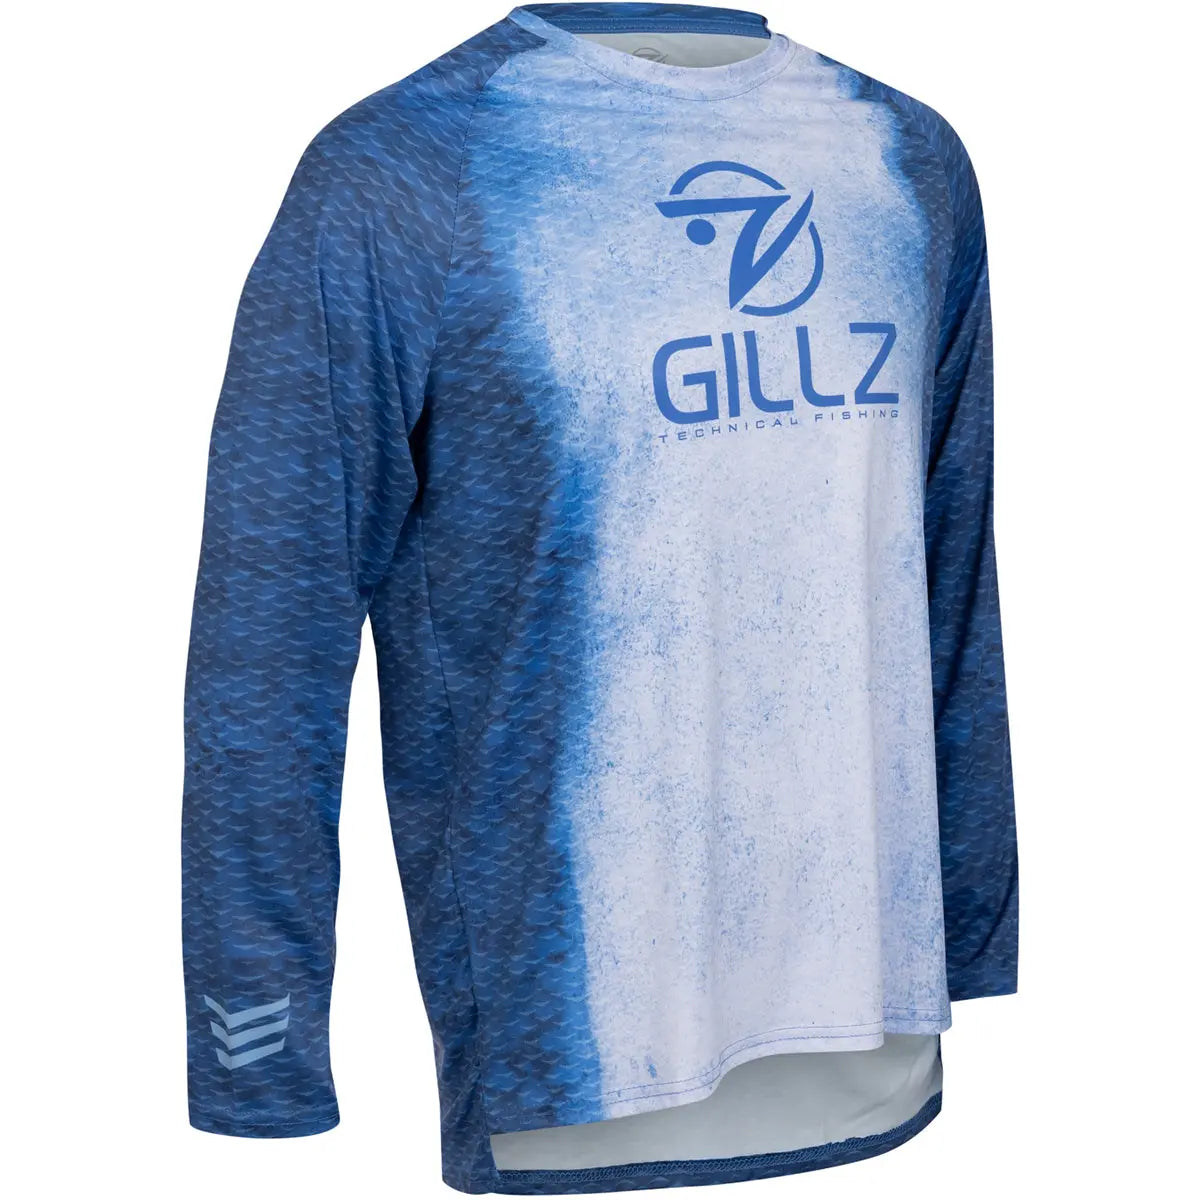 Gillz Contender Series FS UV Long Sleeve T-Shirt - Classic Blue Gillz